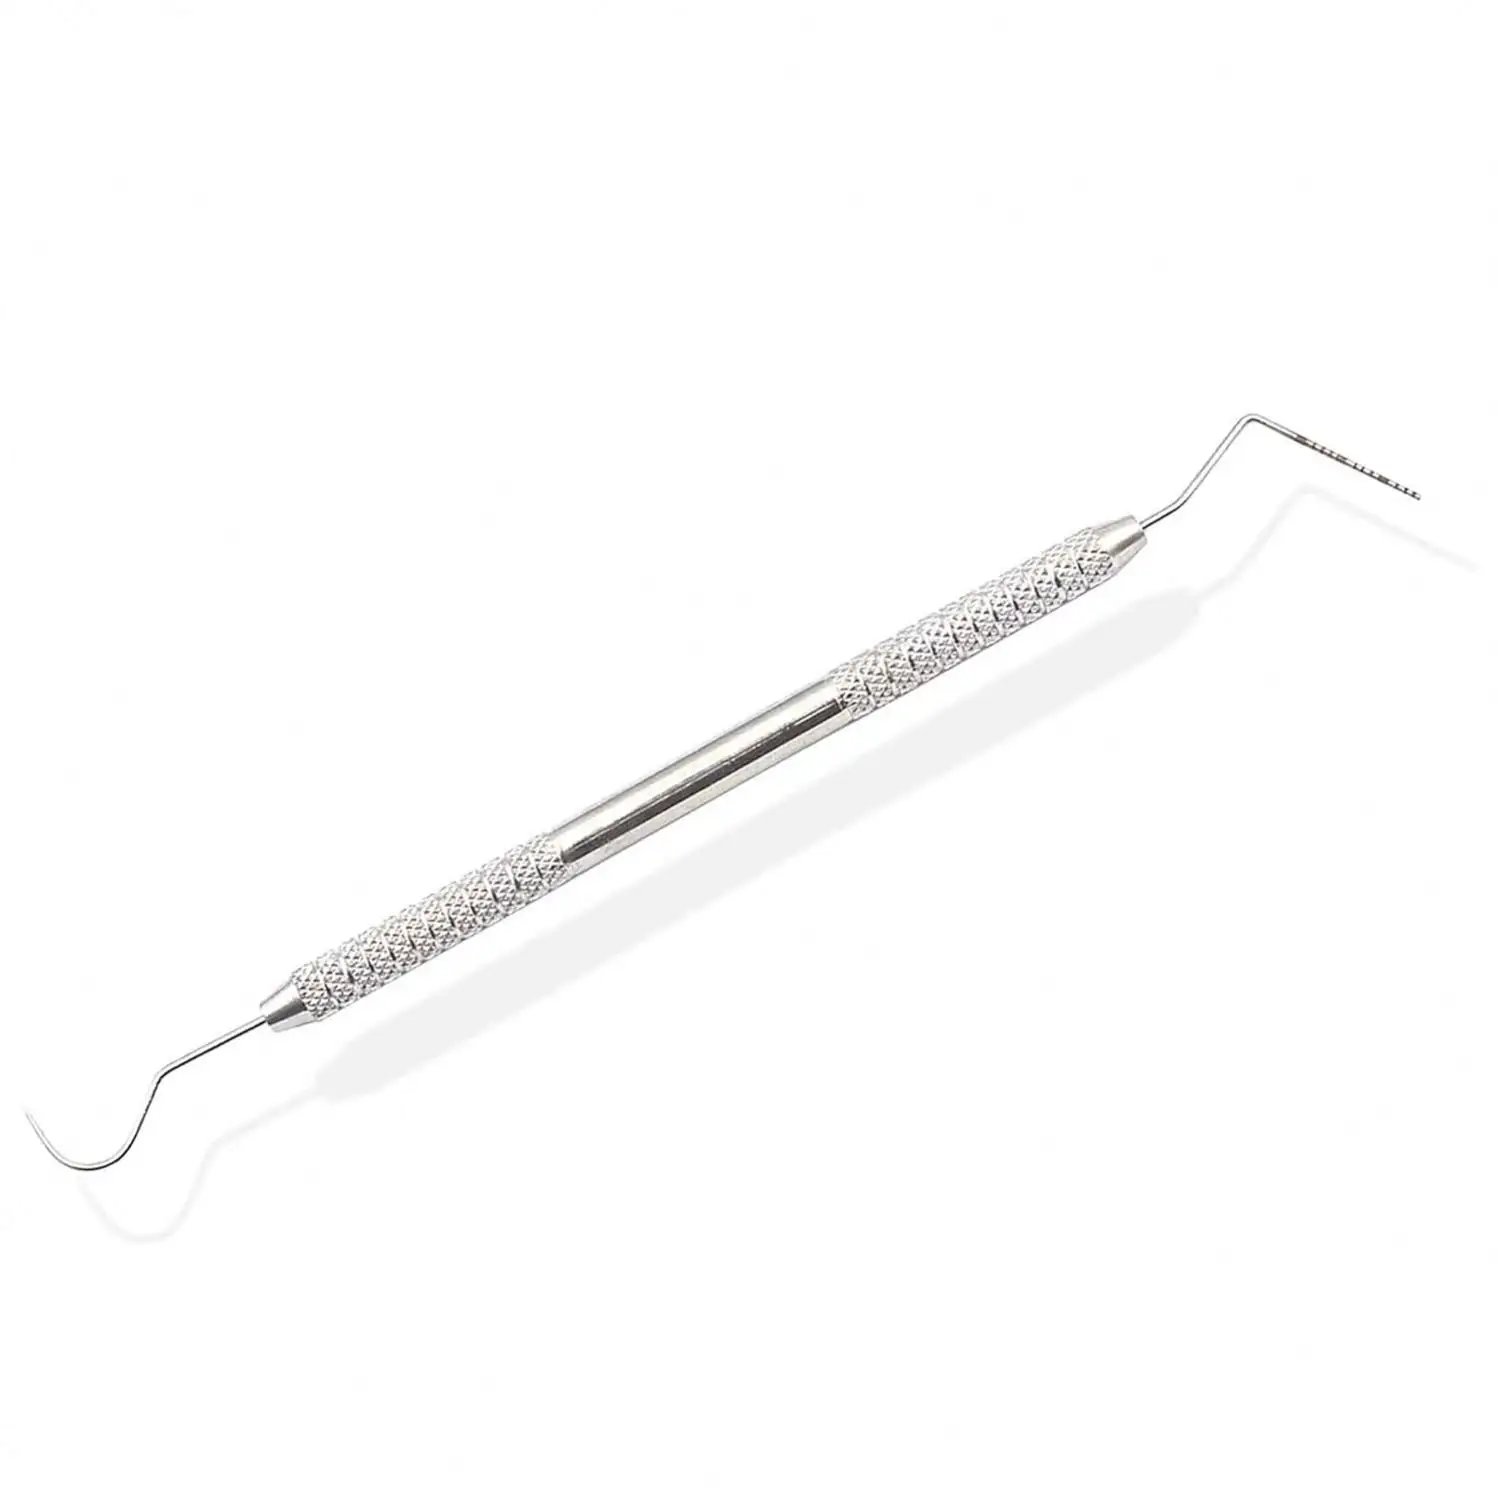 Zahninstrument Zahnarzt-Kit Zahnreinigungswerkzeuge Mundspiegel-Sonde Haken-Pick-Zange-Set Zahnmedizin Zahnarzt Vorbereitung Werkzeug